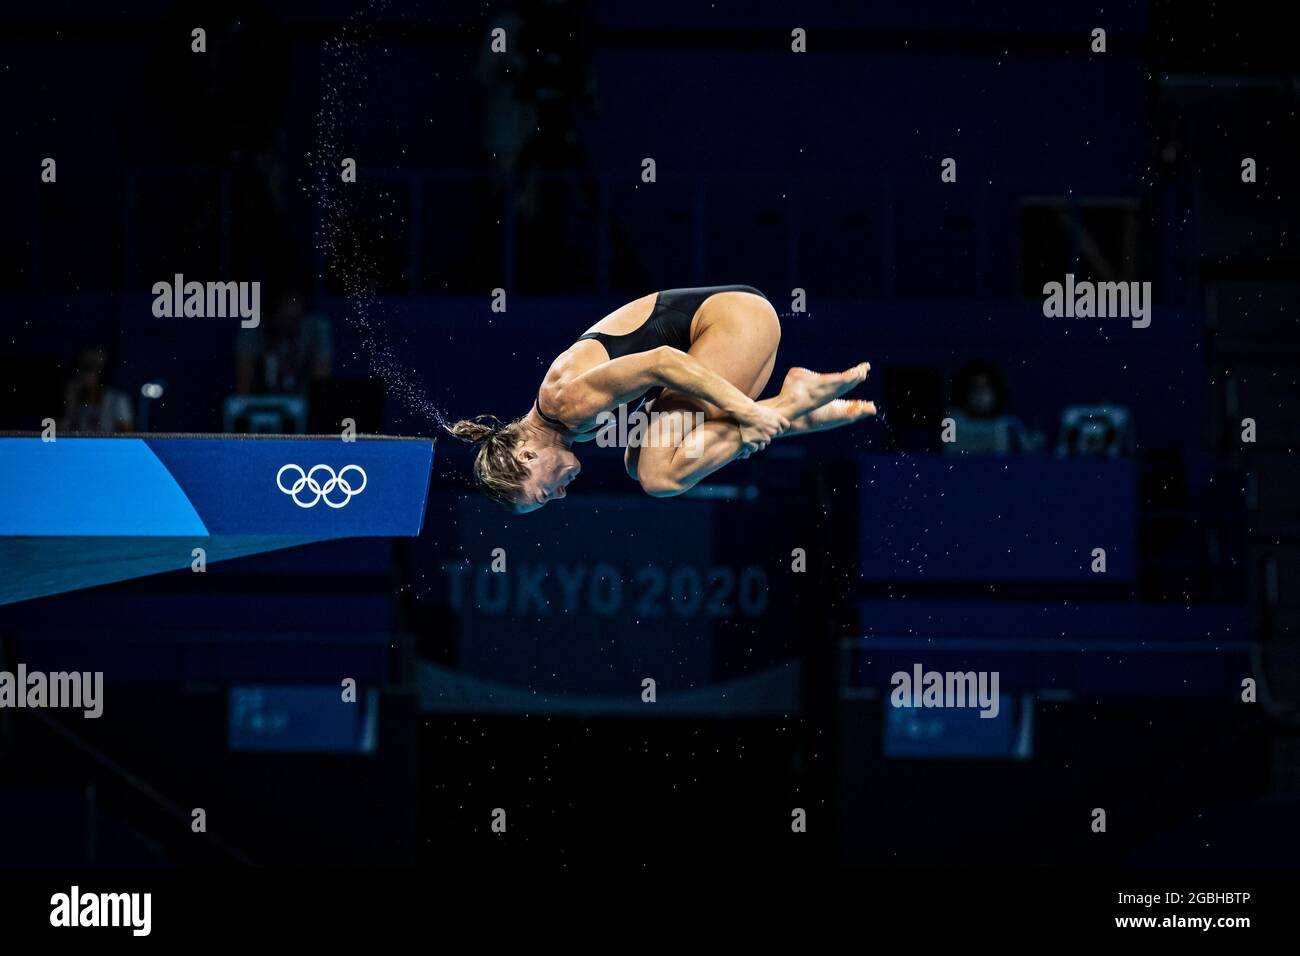 Tokyo, Japon. 4 août 2021. Jeux Olympiques: Plongée W10m préliminaire au Centre aquatique de Tokyo. © ABEL F. ROS / Alamy Live News Banque D'Images